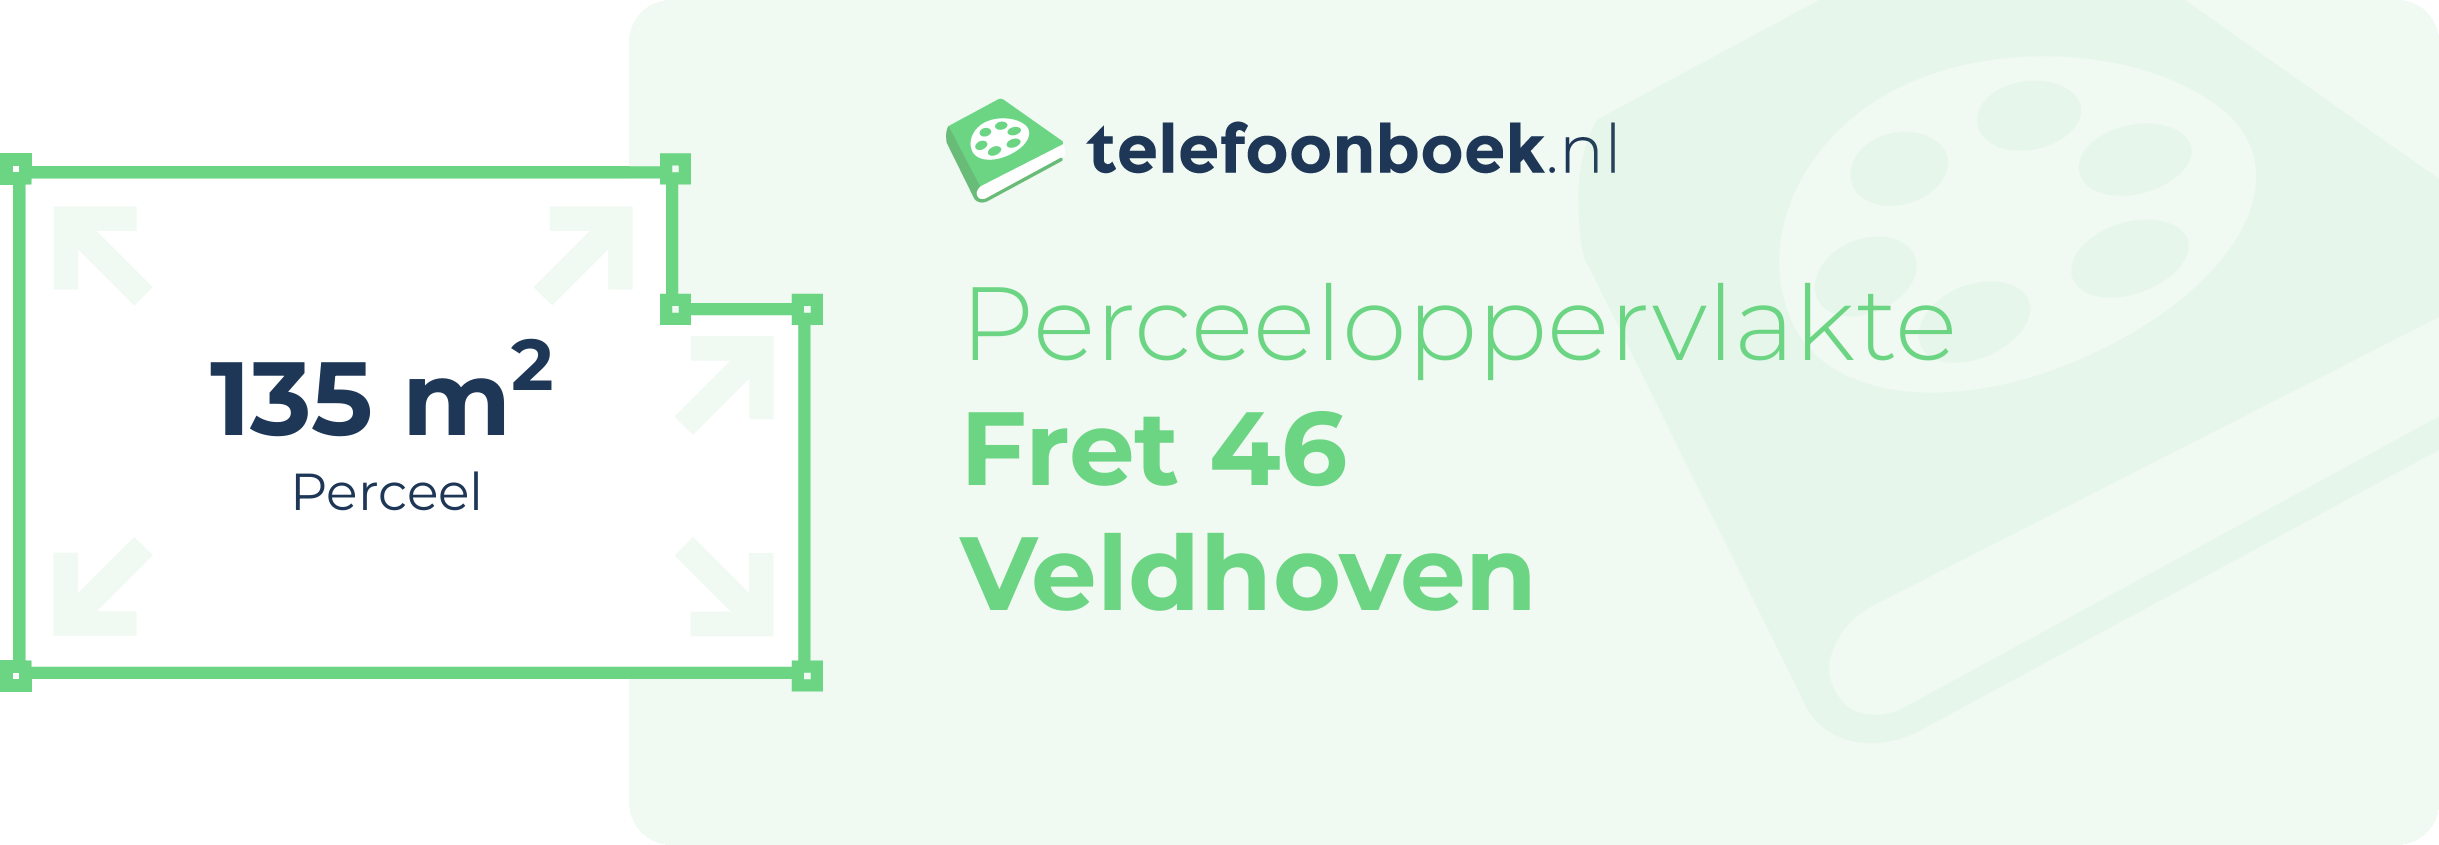 Perceeloppervlakte Fret 46 Veldhoven